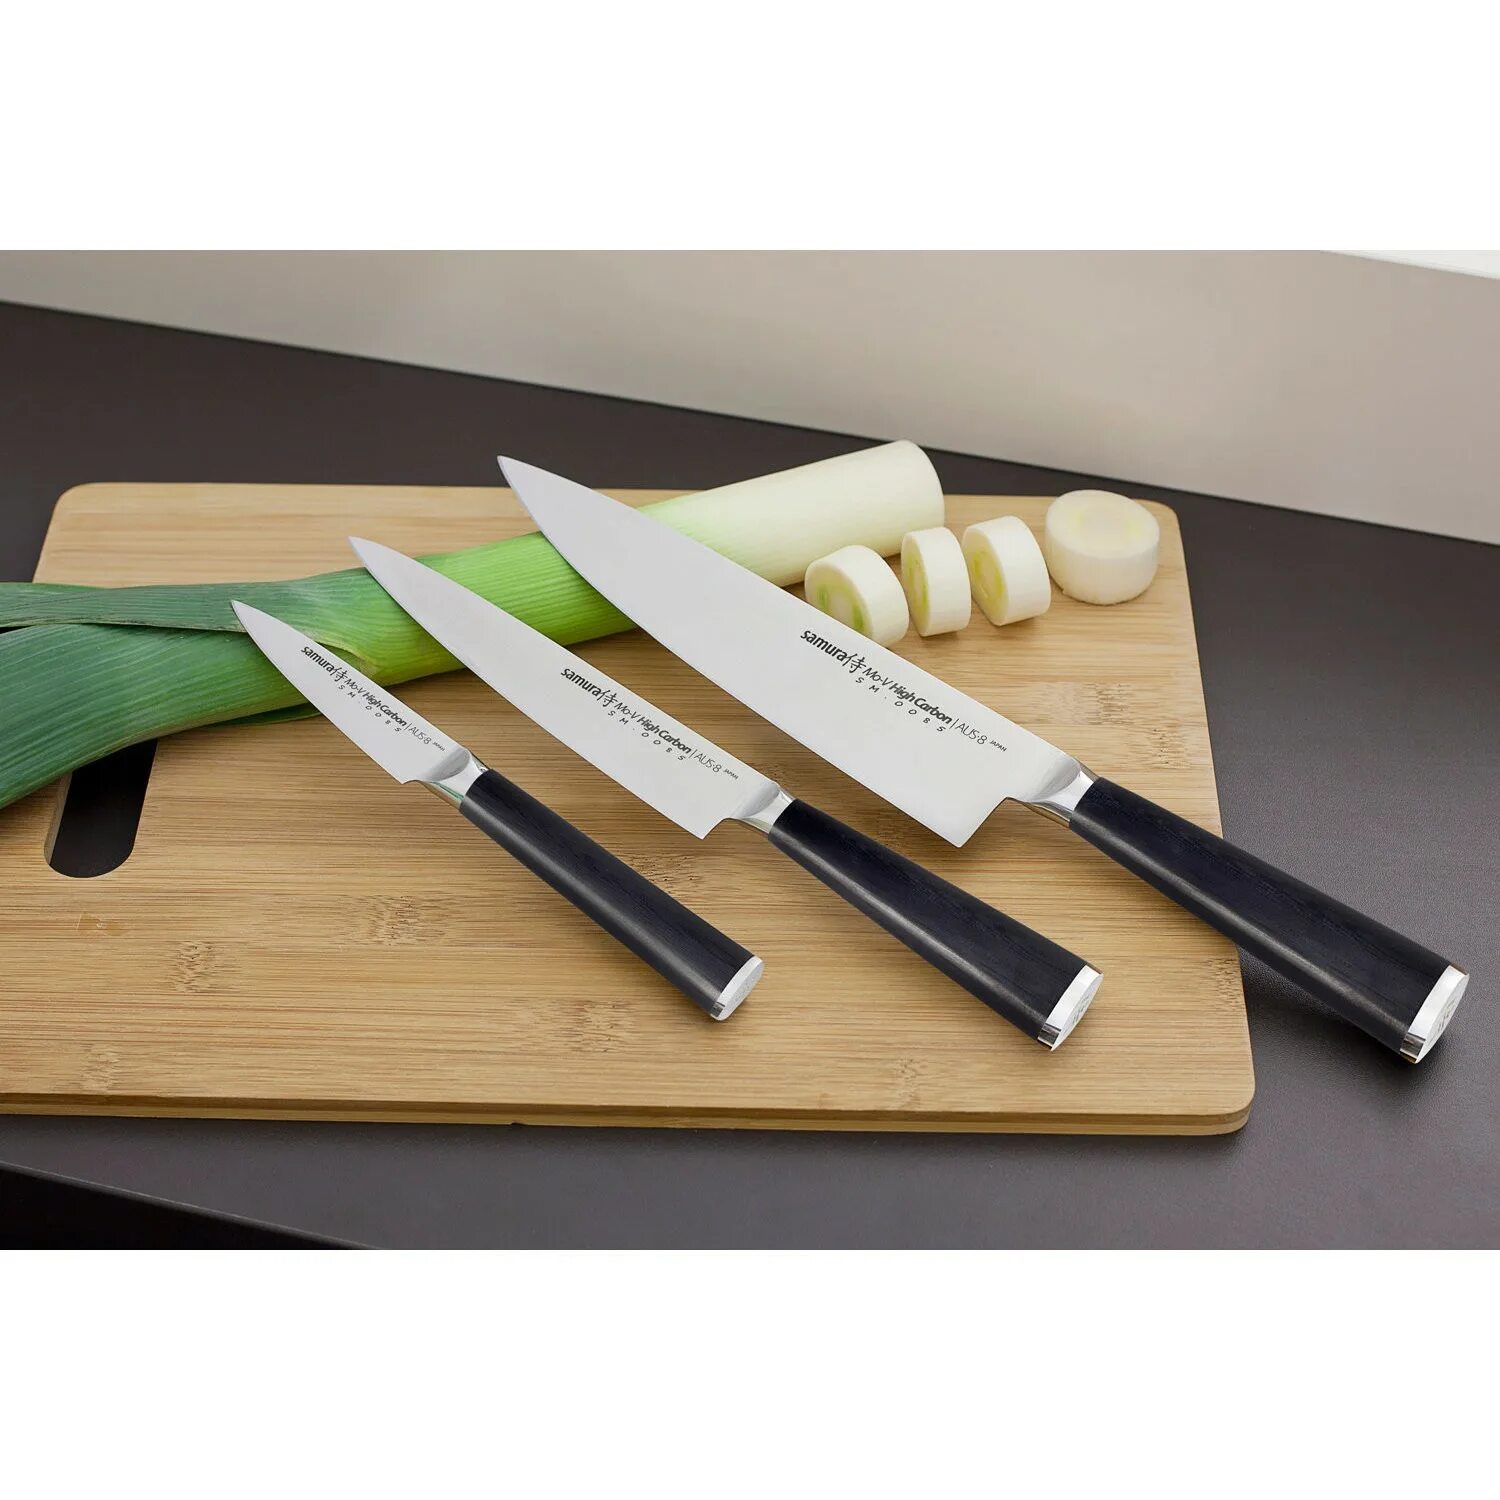 Кухня кухонные ножи. Японские ножи Самура. Японские кухонные ножи Самура. Ножи японские кухонные Samura. Нож поварской Samura.